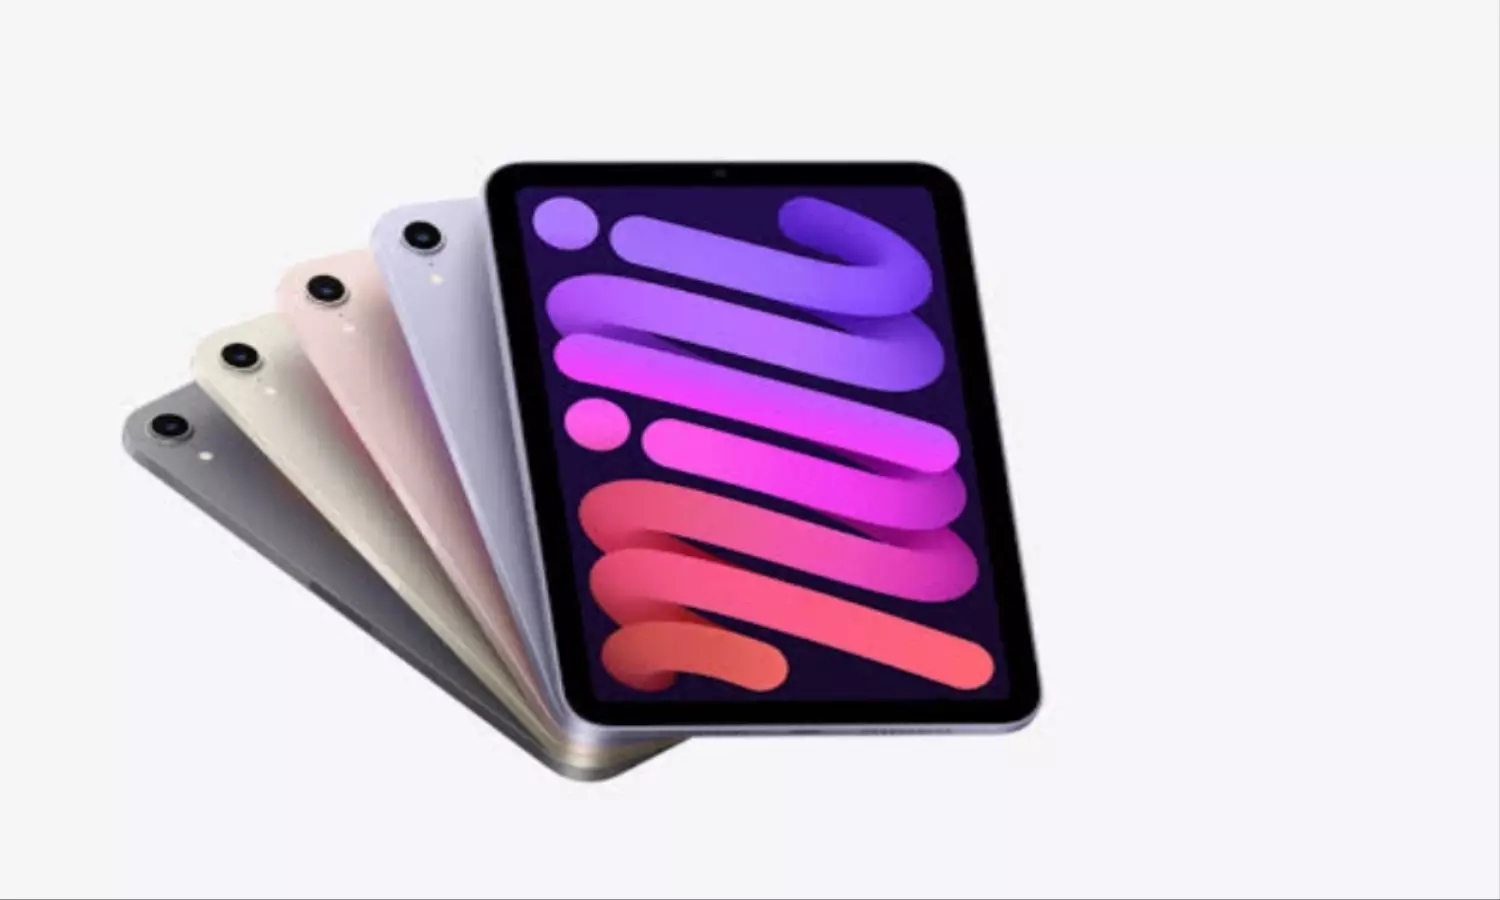 बेहद सस्ता हुआ Apple ipad, 30 हजार से भी ज्यादा का मिल रहा डिस्काउंट